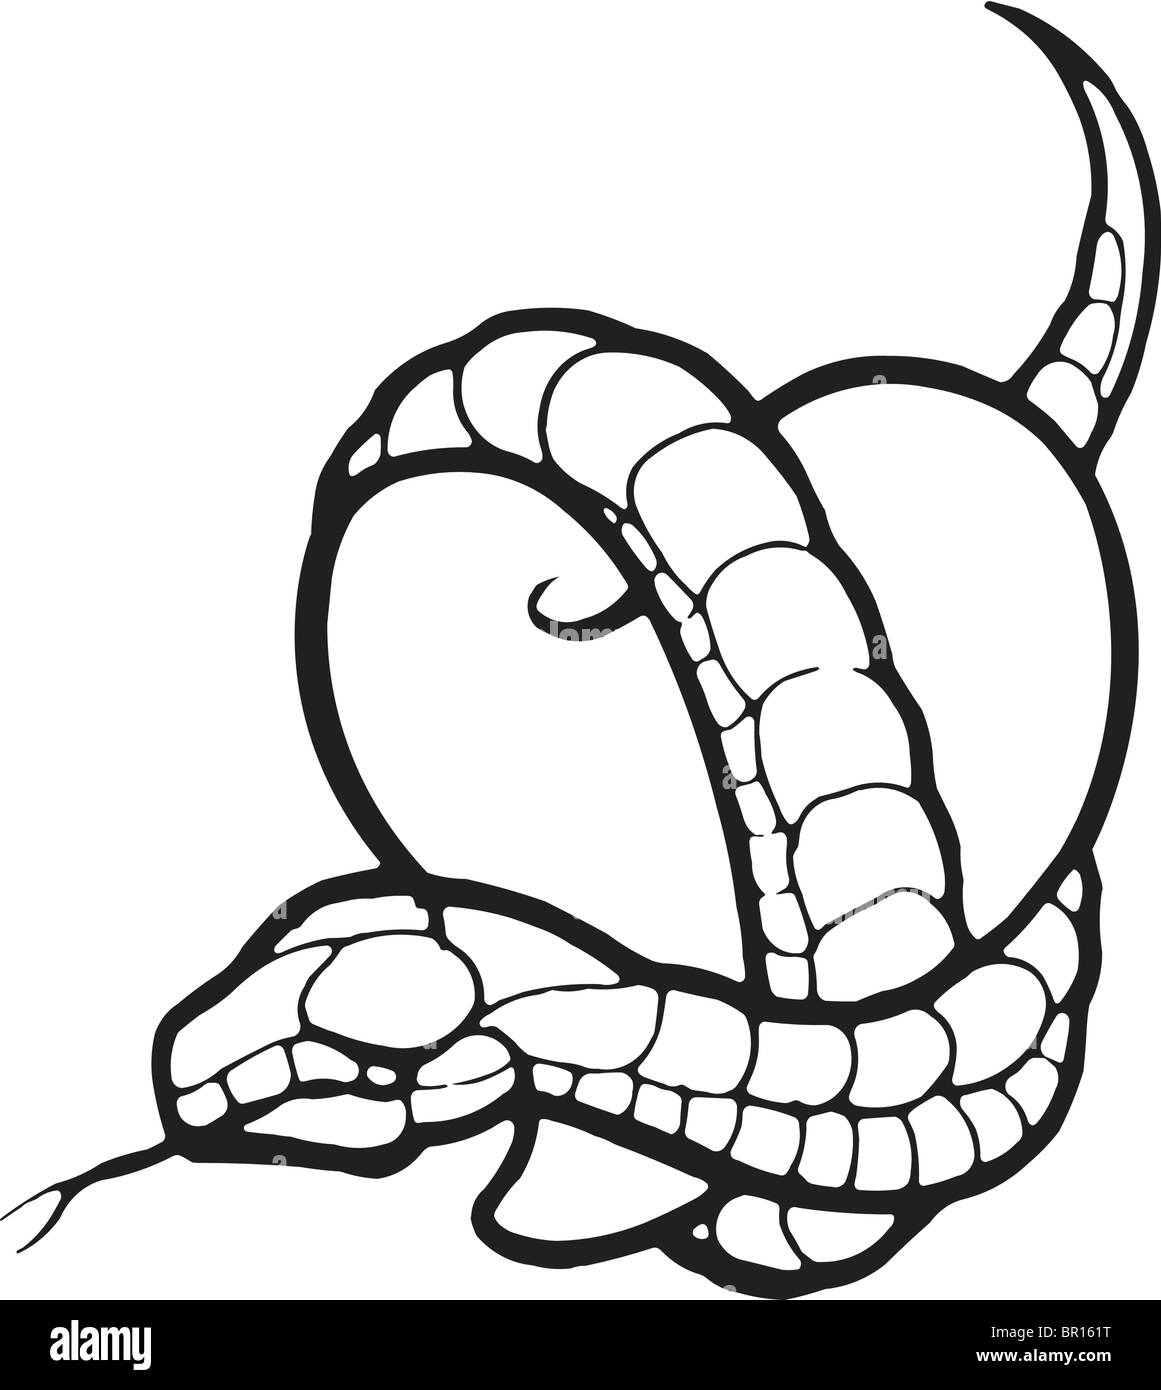 Eine schwarz-weiß Version einer Schablone ein Herz mit einer Schlange umwickelt Stockfoto